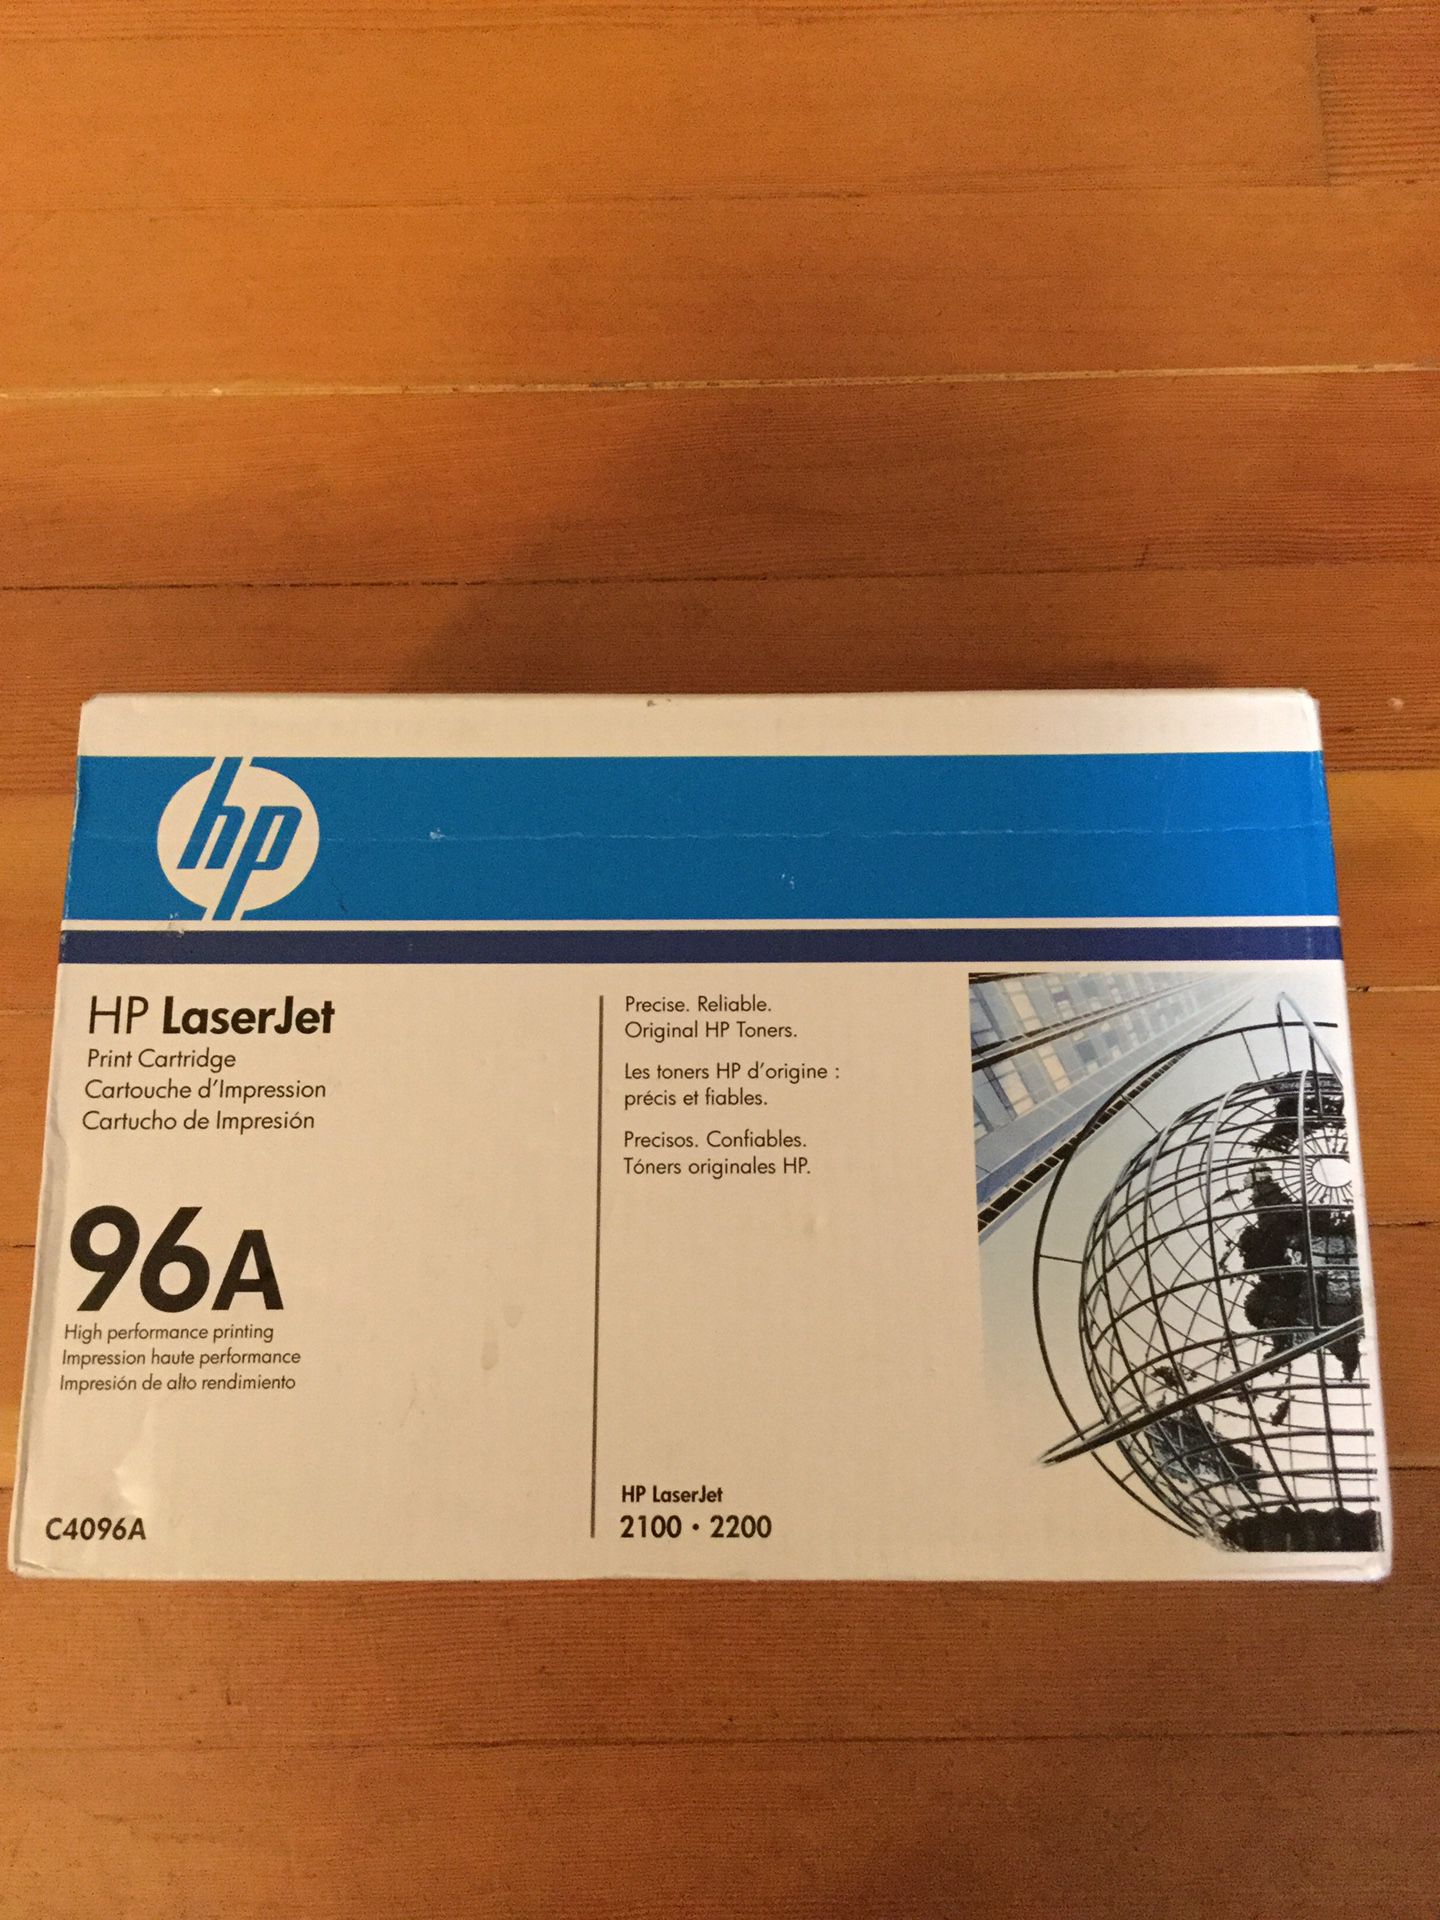 HP LaserJet Printer Cartridge